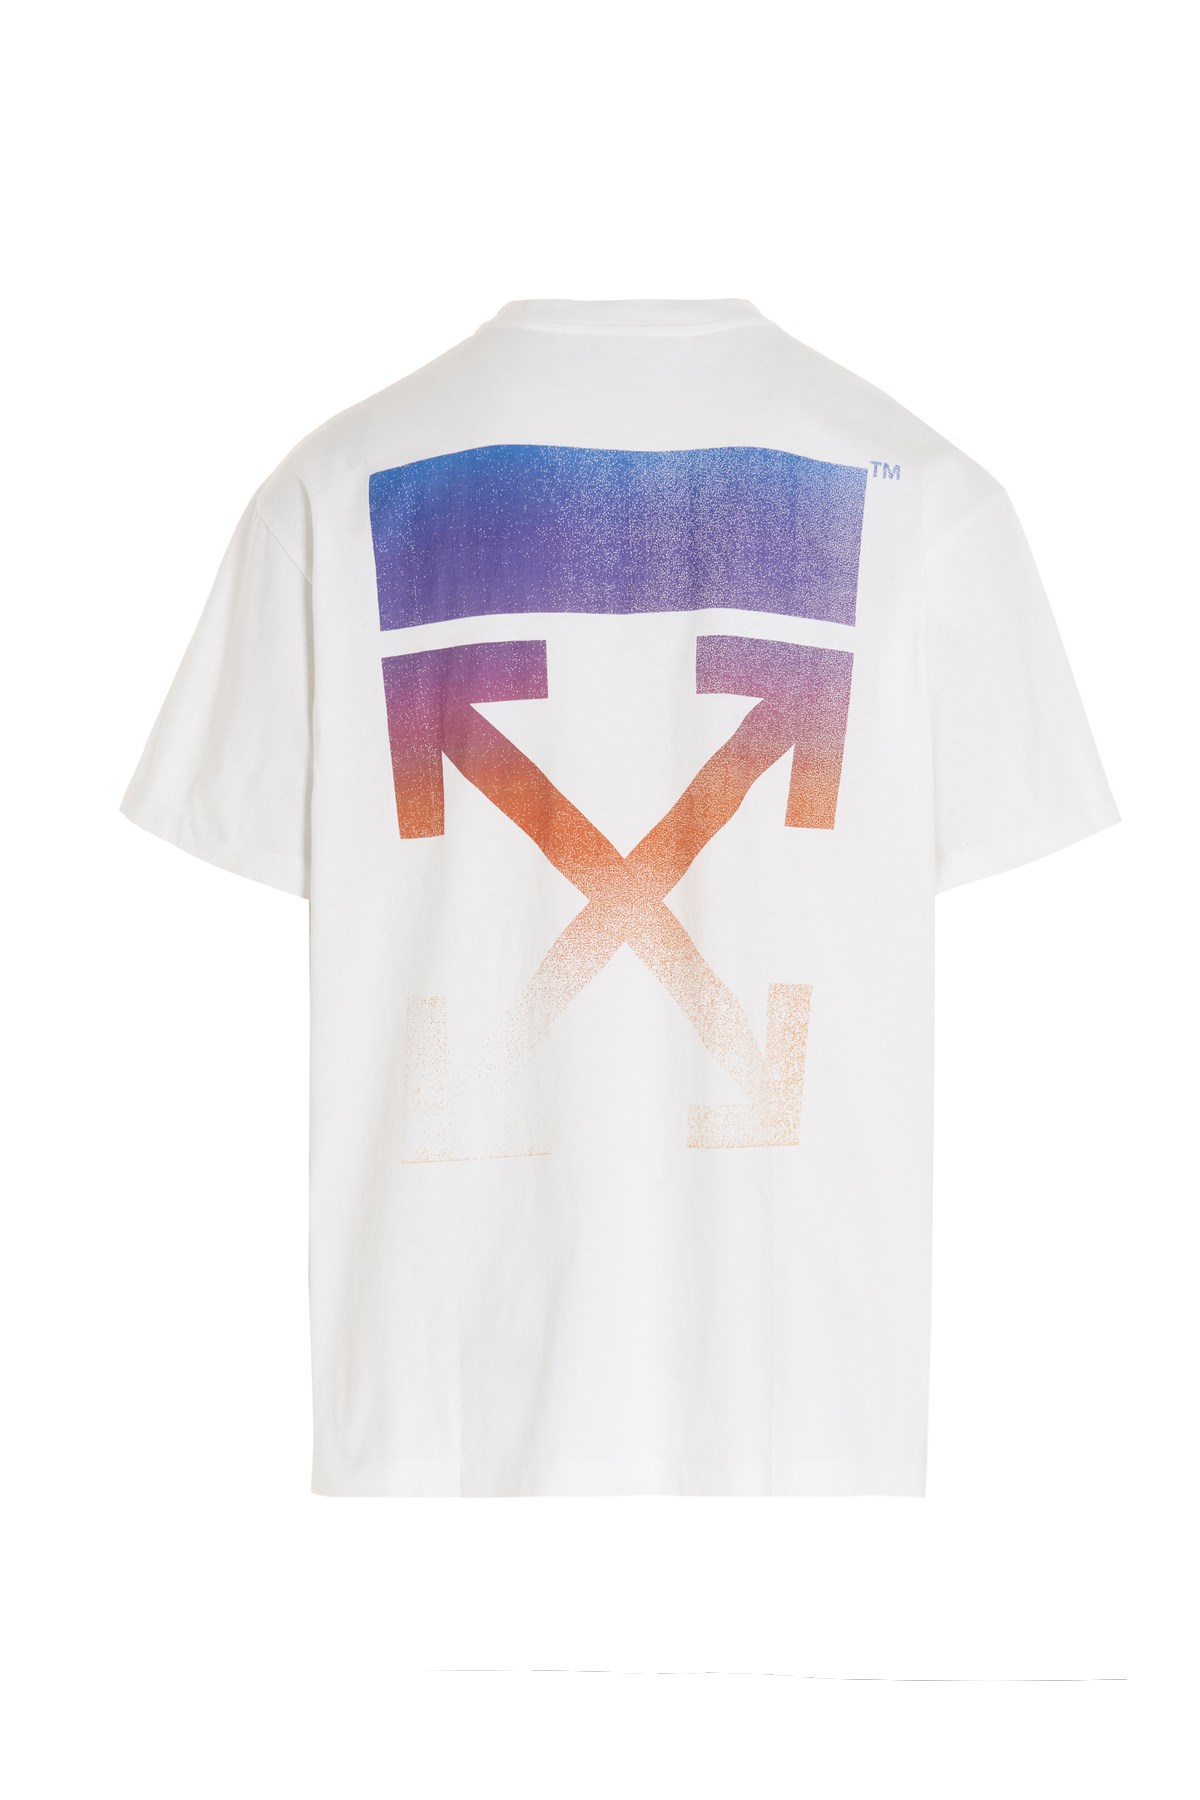 OFF-WHITE 'Degradé Arrow’ T-Shirt